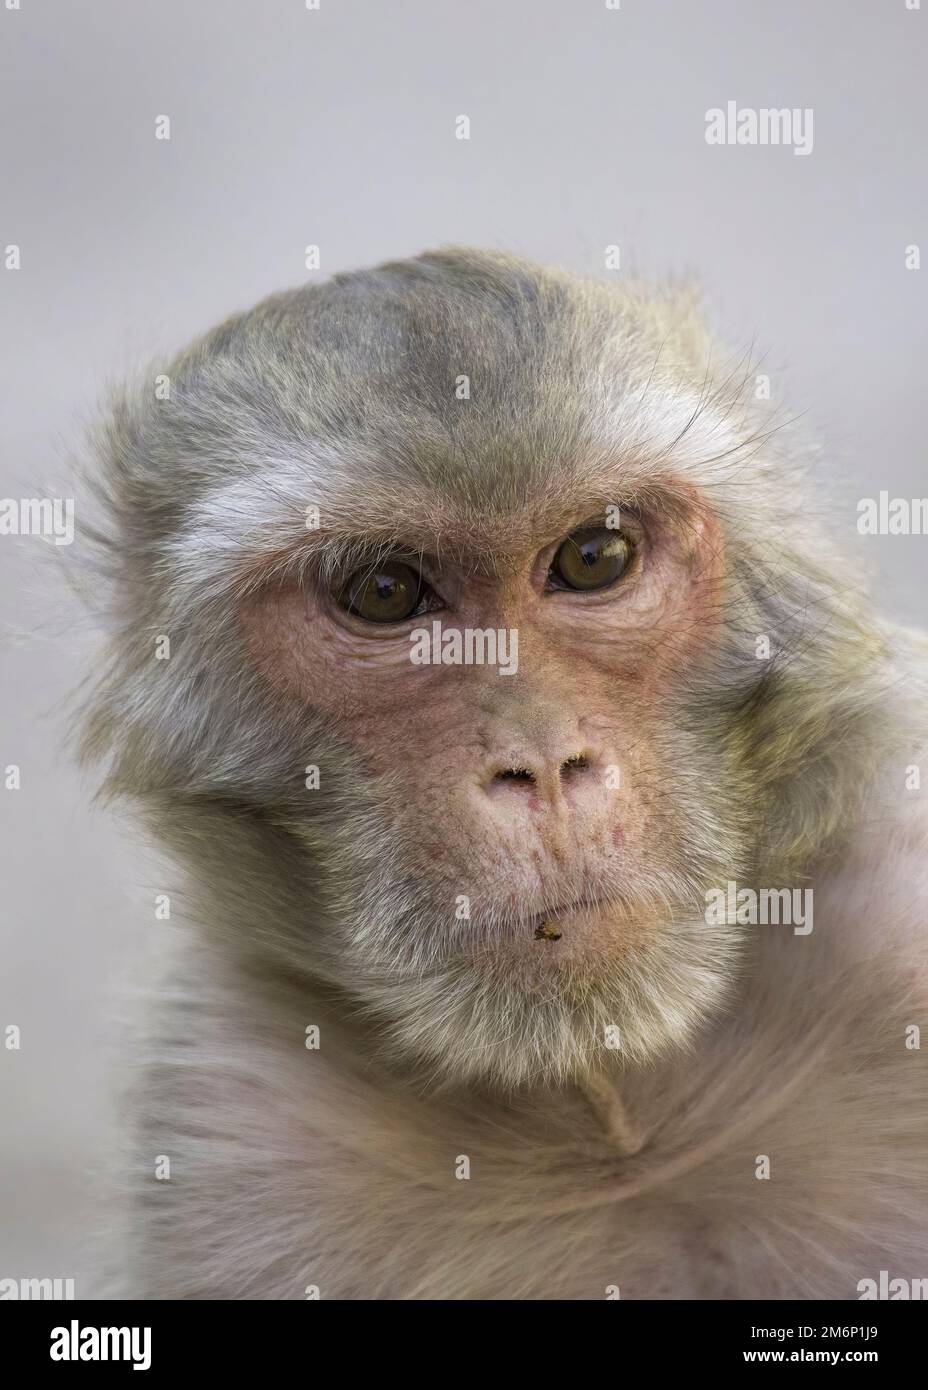 Ritratto di una scimmia Rhesus Macaque in primo piano della testa che mostra grandi occhi marrone dettaglio sul viso e pelliccia bianca grigia e marrone con uno sfondo piano Foto Stock